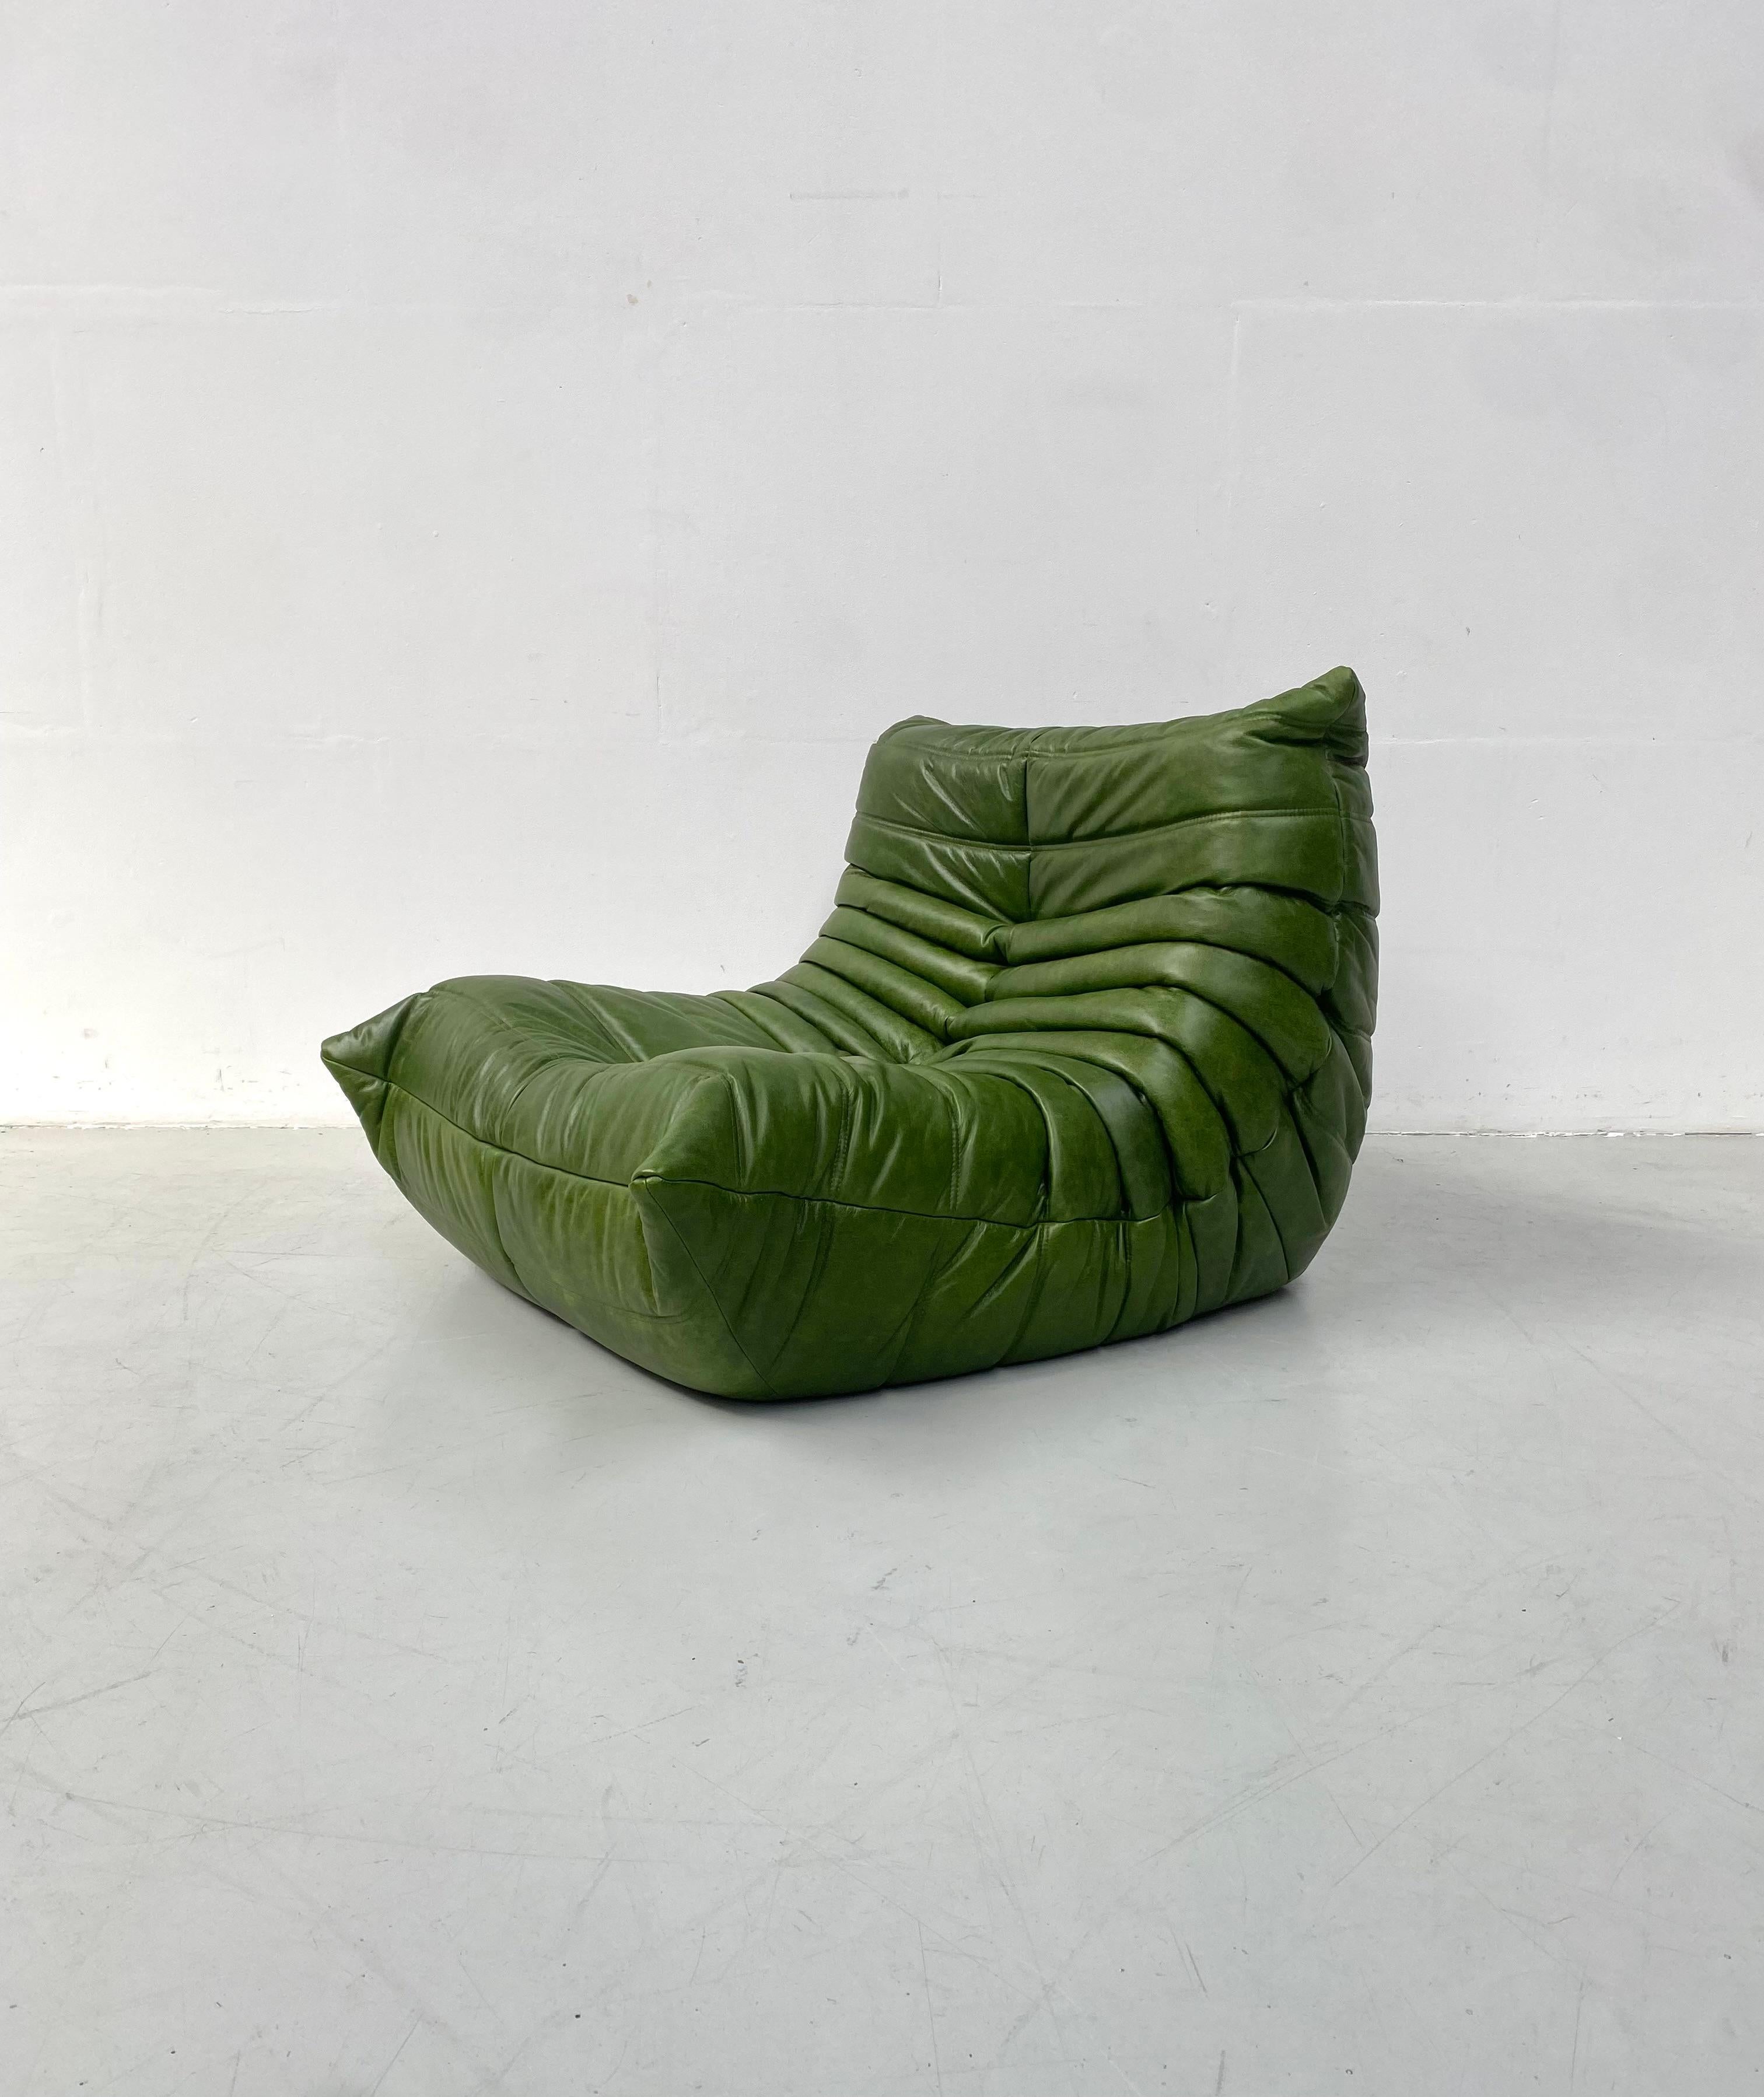 Der Togo wurde 1973 von Michel Ducaroy für Ligne Roset entworfen. Er ist der erste Stuhl, der nur aus Schaumstoff und Leder besteht. Das Innenleben besteht aus Schaumstoff in 5 verschiedenen Dichten. Die Togo-Reihe besteht aus 5 verschiedenen